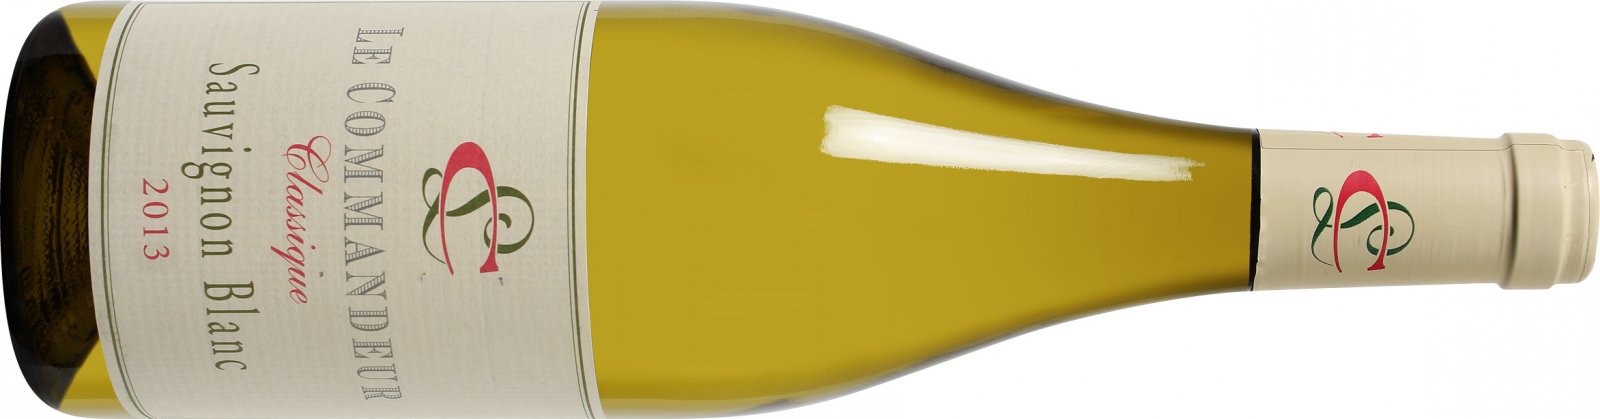 Le Commandeur Classique Sauvignon Blanc 2013